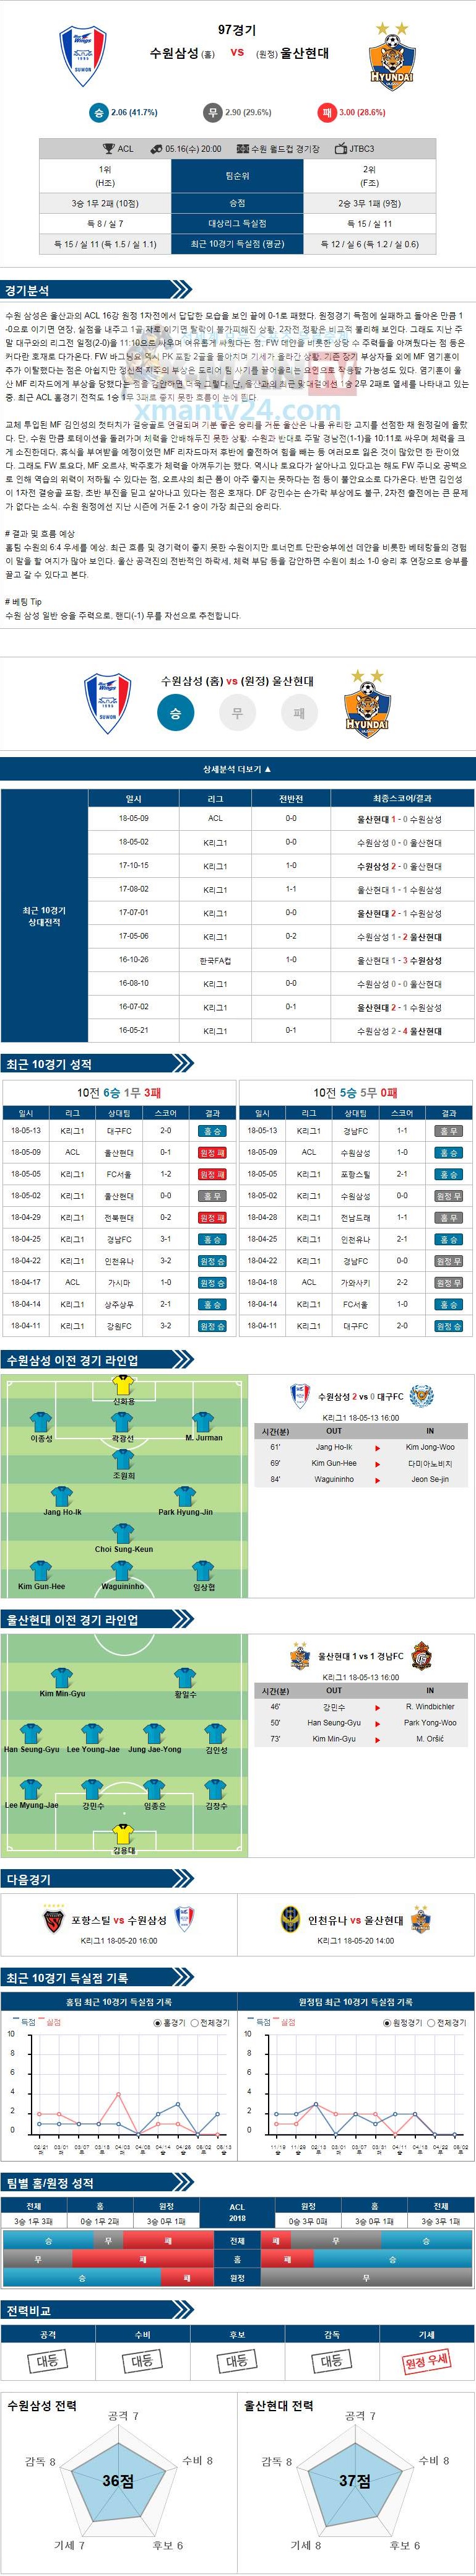 5-16 [아시아챔피언스리그] 20:00 축구분석 수원 삼성 vs 울산 현대